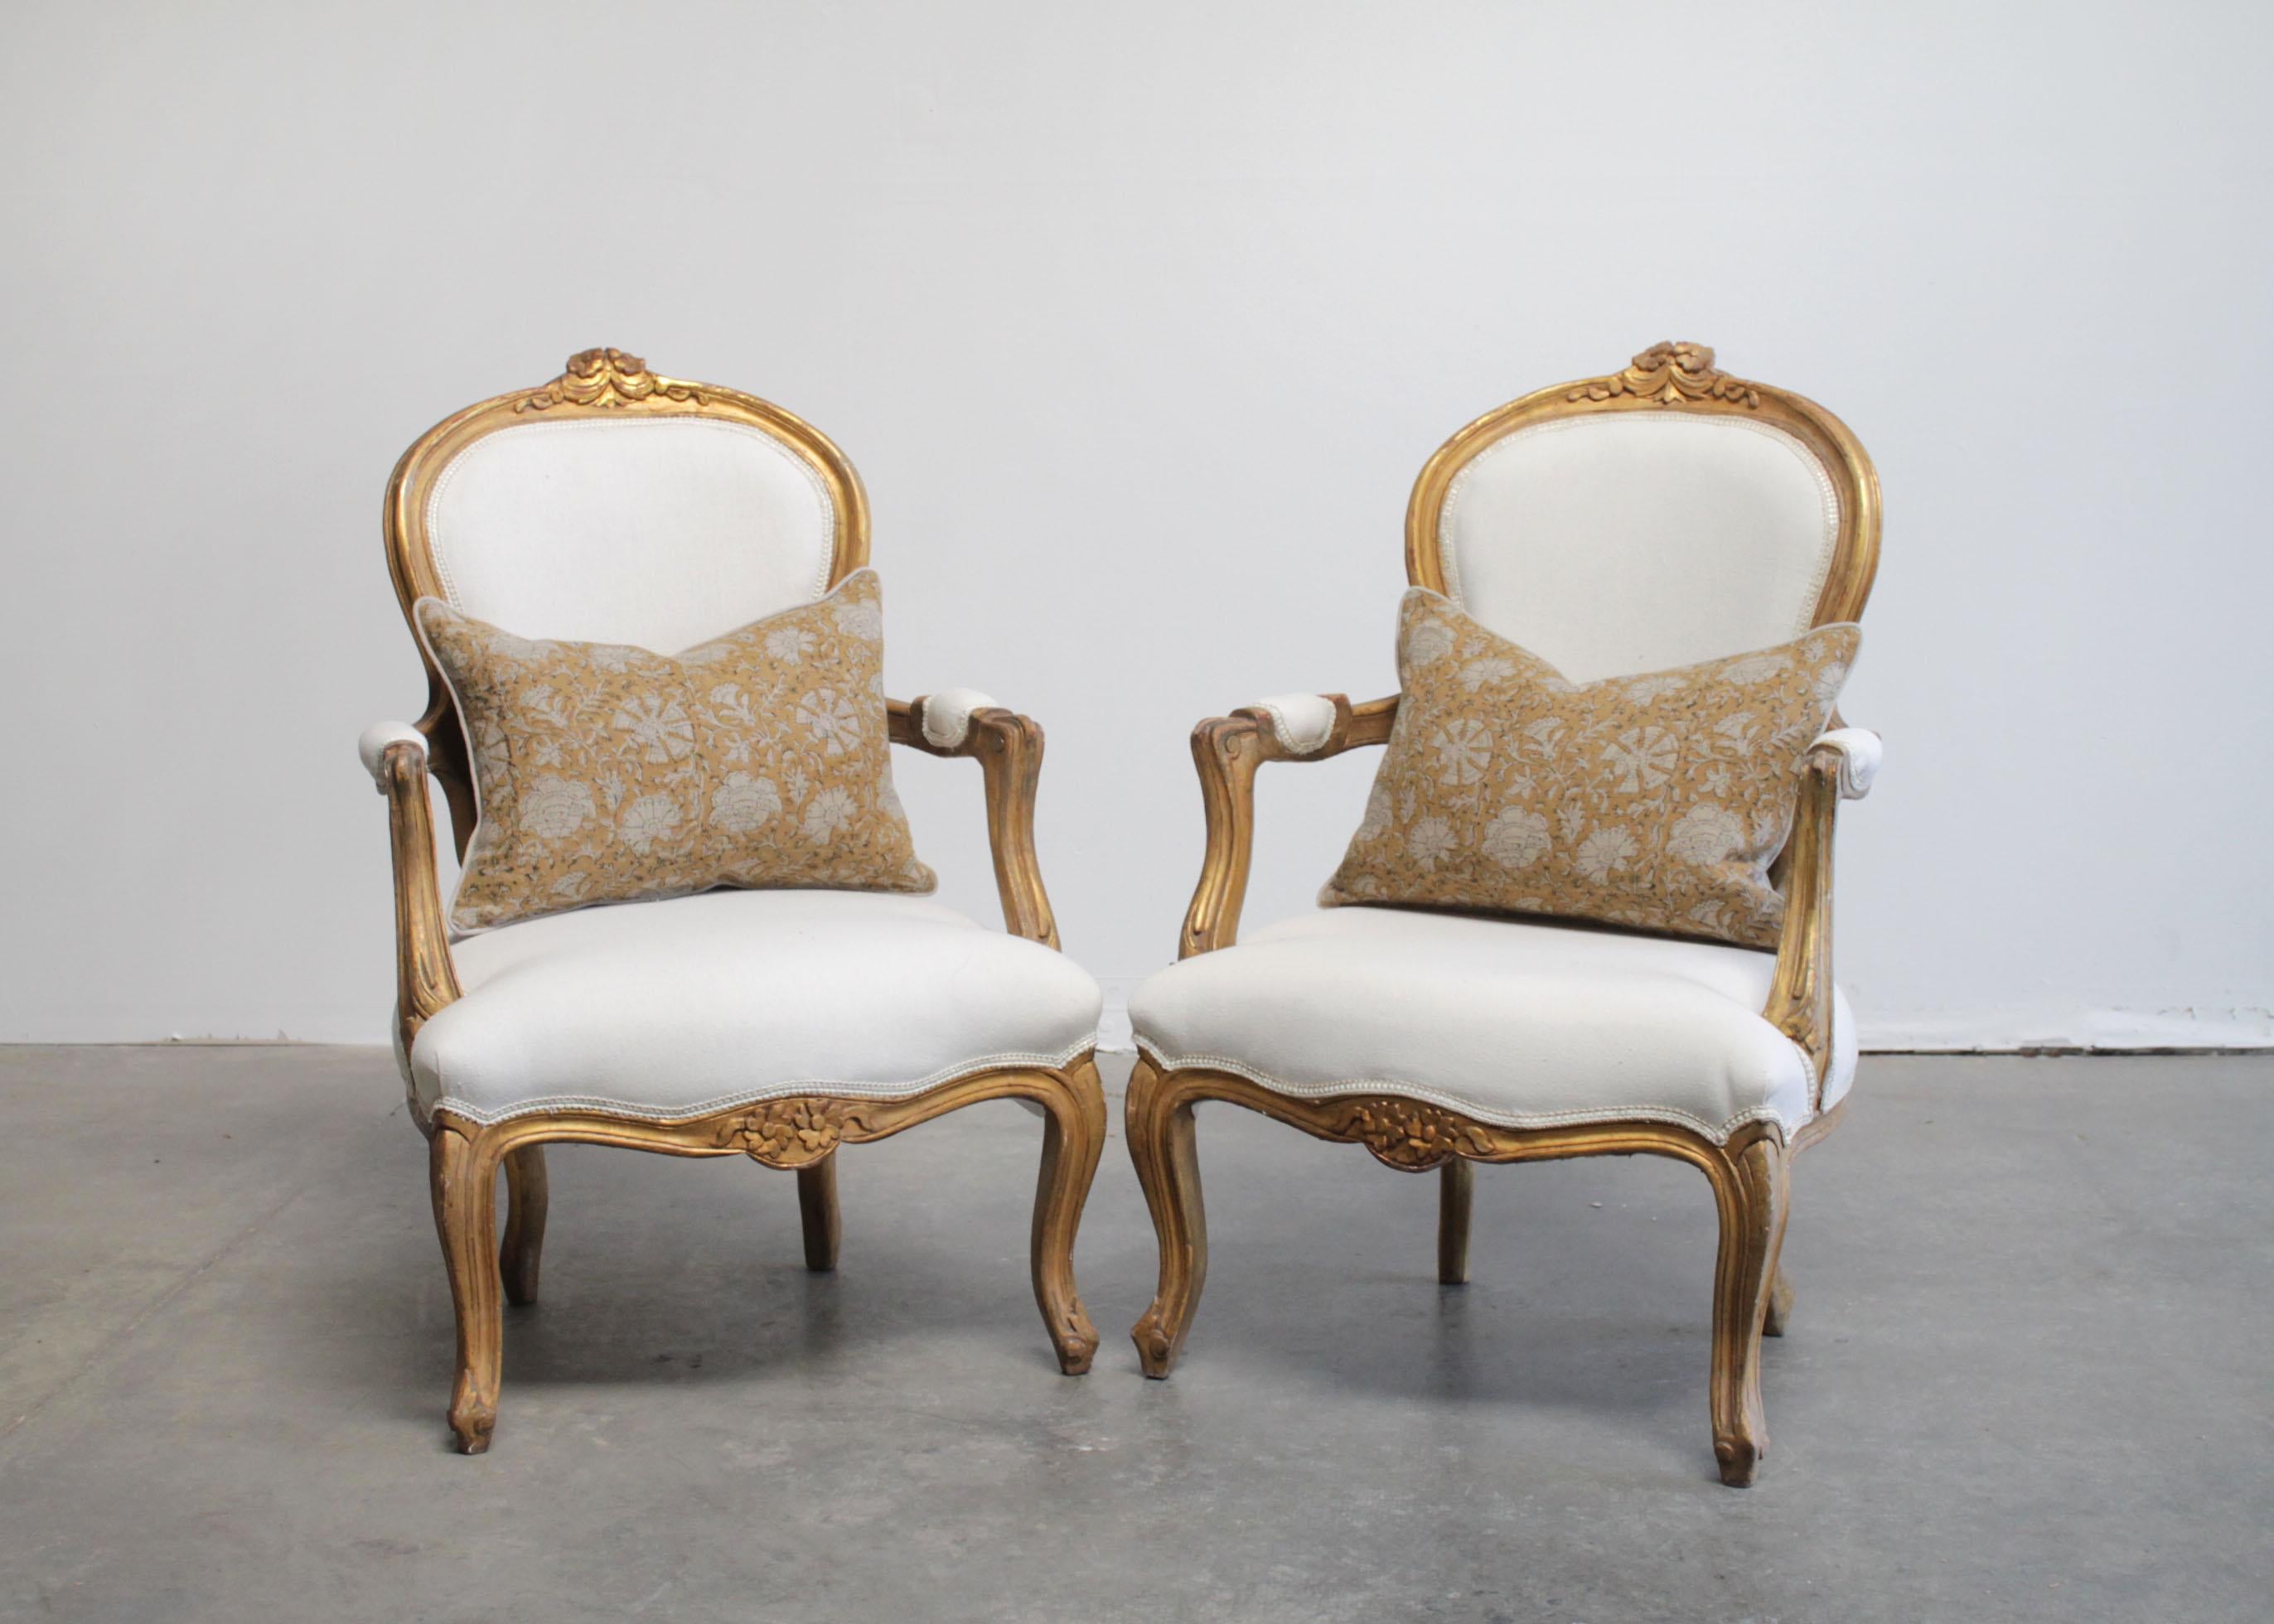 Anciens fauteuils ouverts de style Louis XV en bois doré sculpté
Finition originale en bois doré avec des bords subtilement usés, et le bois transparaissant à travers la dorure.
Pieds cabriole classiques, avec des sculptures florales au sommet du